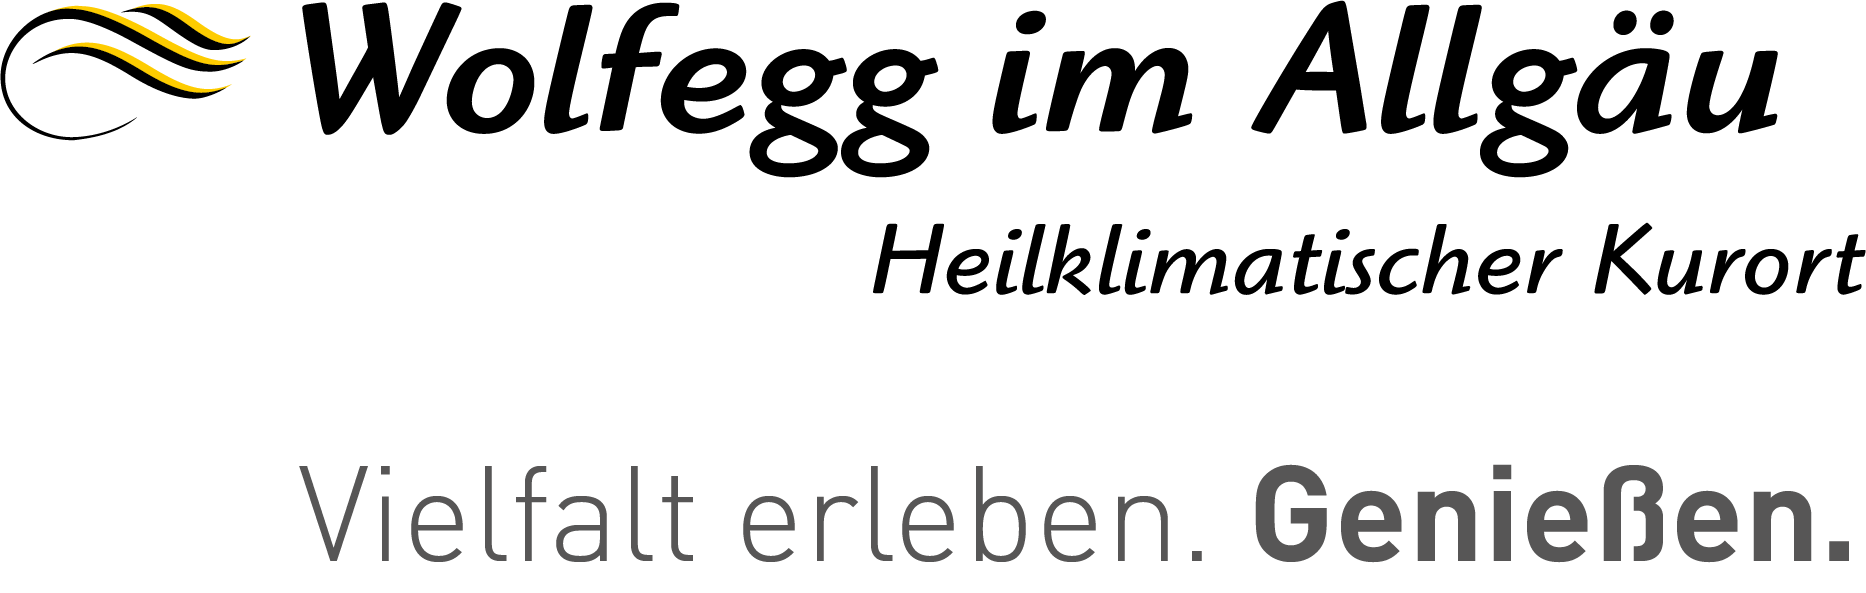 Das Logo von Wolfegg